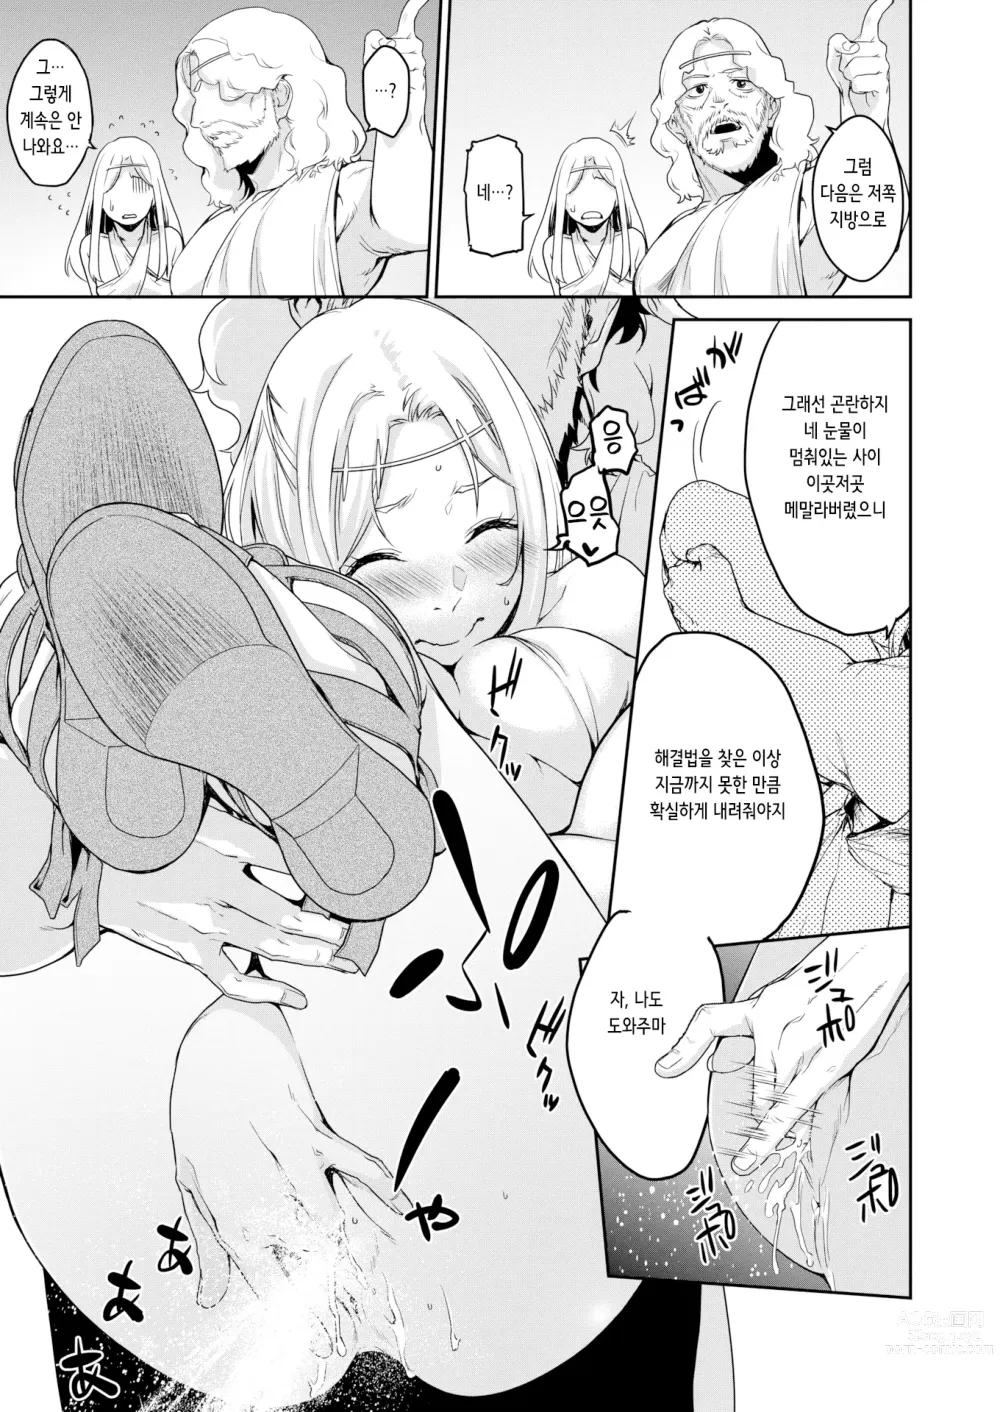 Page 7 of manga 기우제 (decensored)